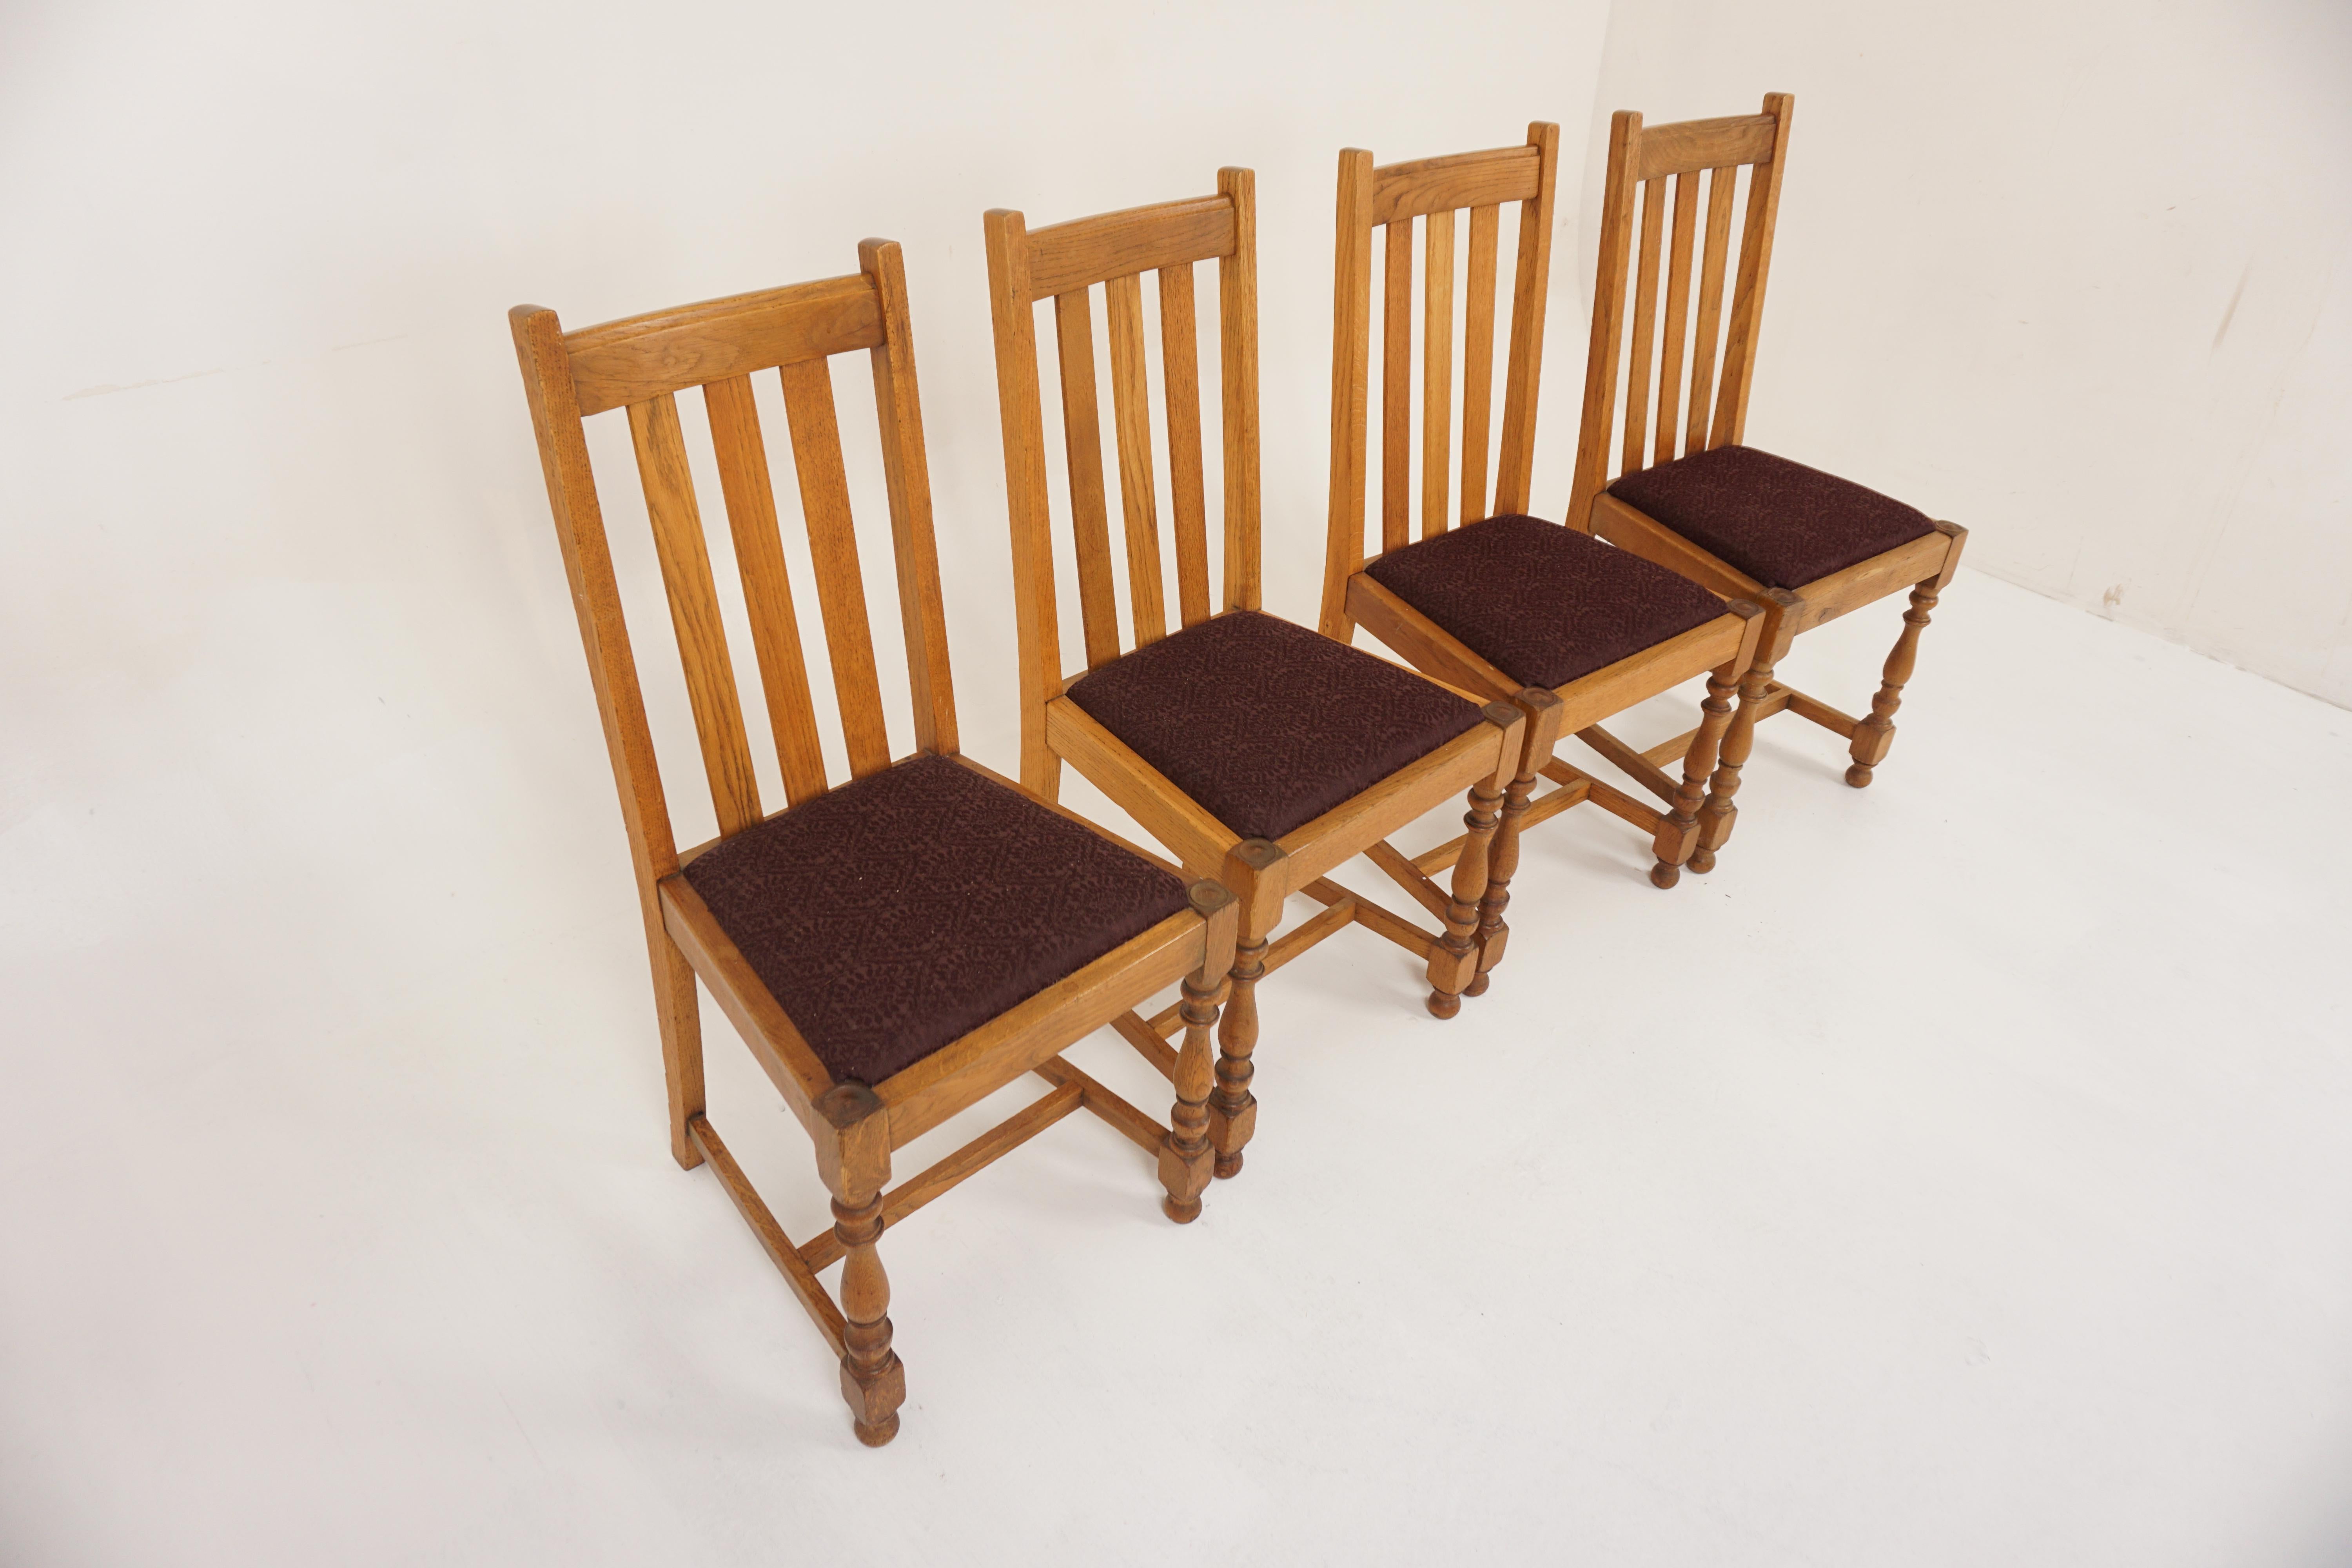 4 Vintage-Stühle aus massivem Eichenholz mit hoher Rückenlehne, Lift-Out-Stühle, Schottland 1920, H1201 

Schottland 1920
Eiche massiv
Originalausführung
Obere Schiene mit drei vertikalen Lamellen
Der gepolsterte Sitz kann herausgeklappt werden und